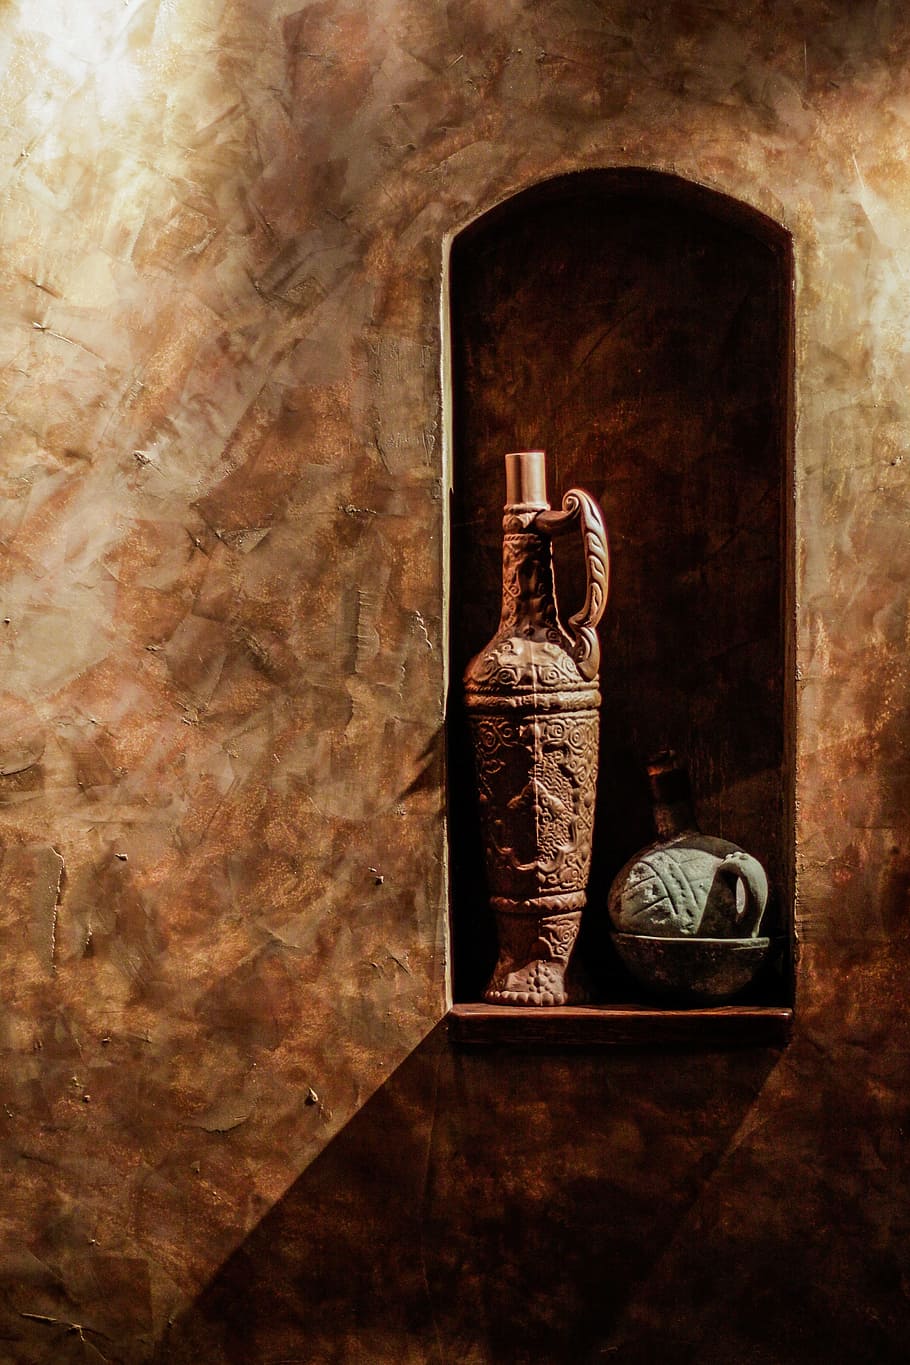 茶色のセラミック花瓶, 茶色, セラミック, 花瓶, ワイン, ボトル, 壁, ワインボトル, 古い, 歴史的